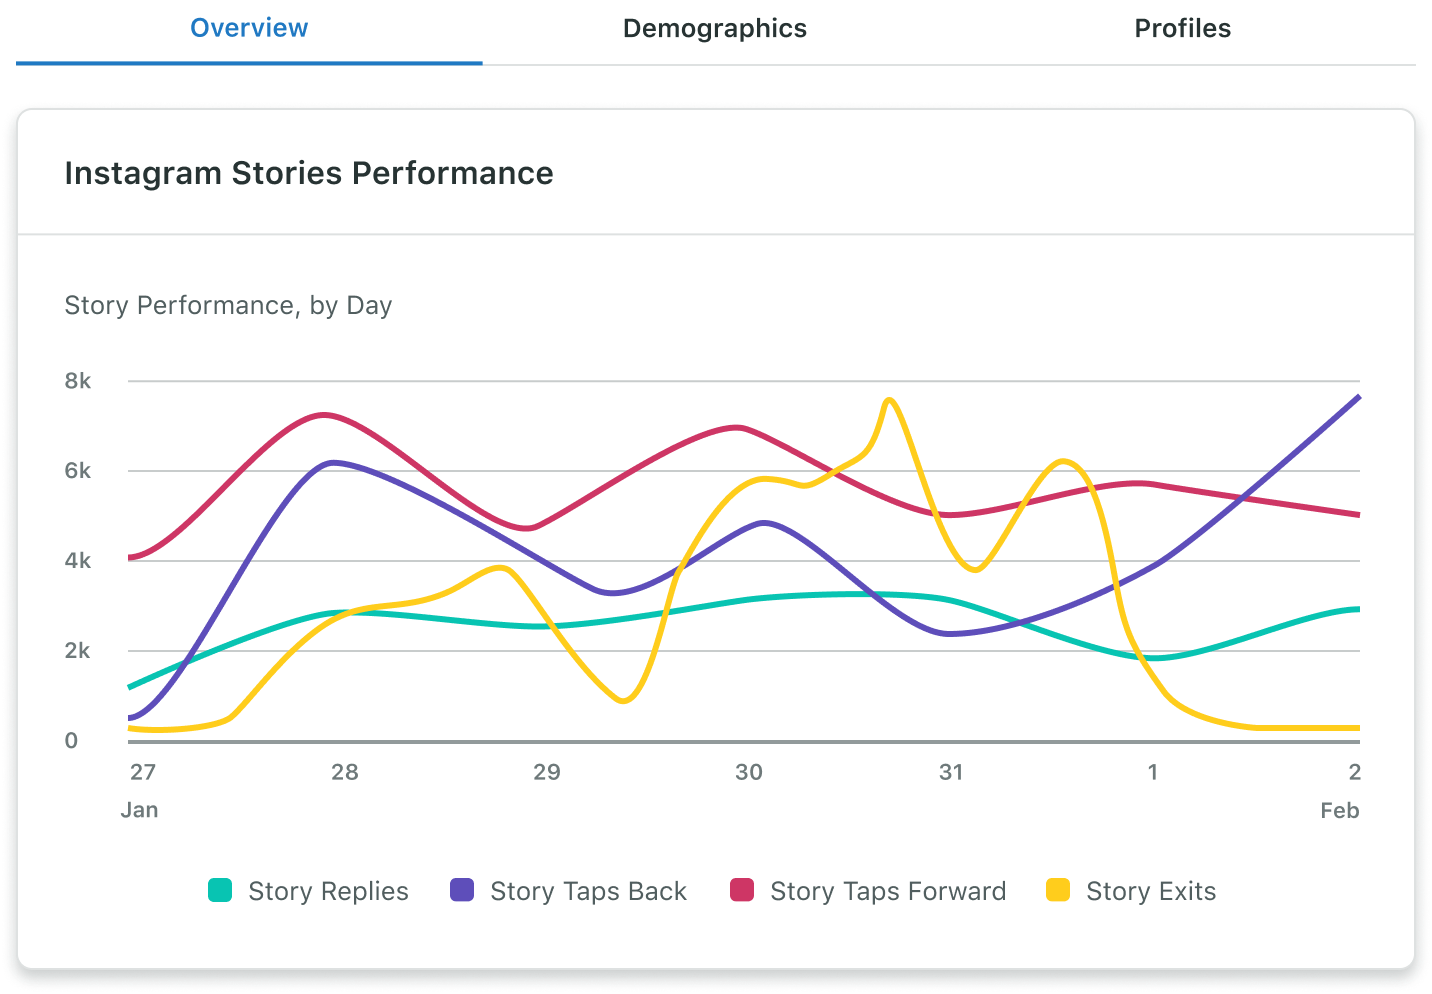 Der Analysebericht für Instagram Business-Profile von Sprout enthält tägliche Performance-Daten zu Stories, darunter Informationen rund um Antworten, Zurücktippen, Weitertippen und Verlassen innerhalb eines ausgewählten Zeitraums.